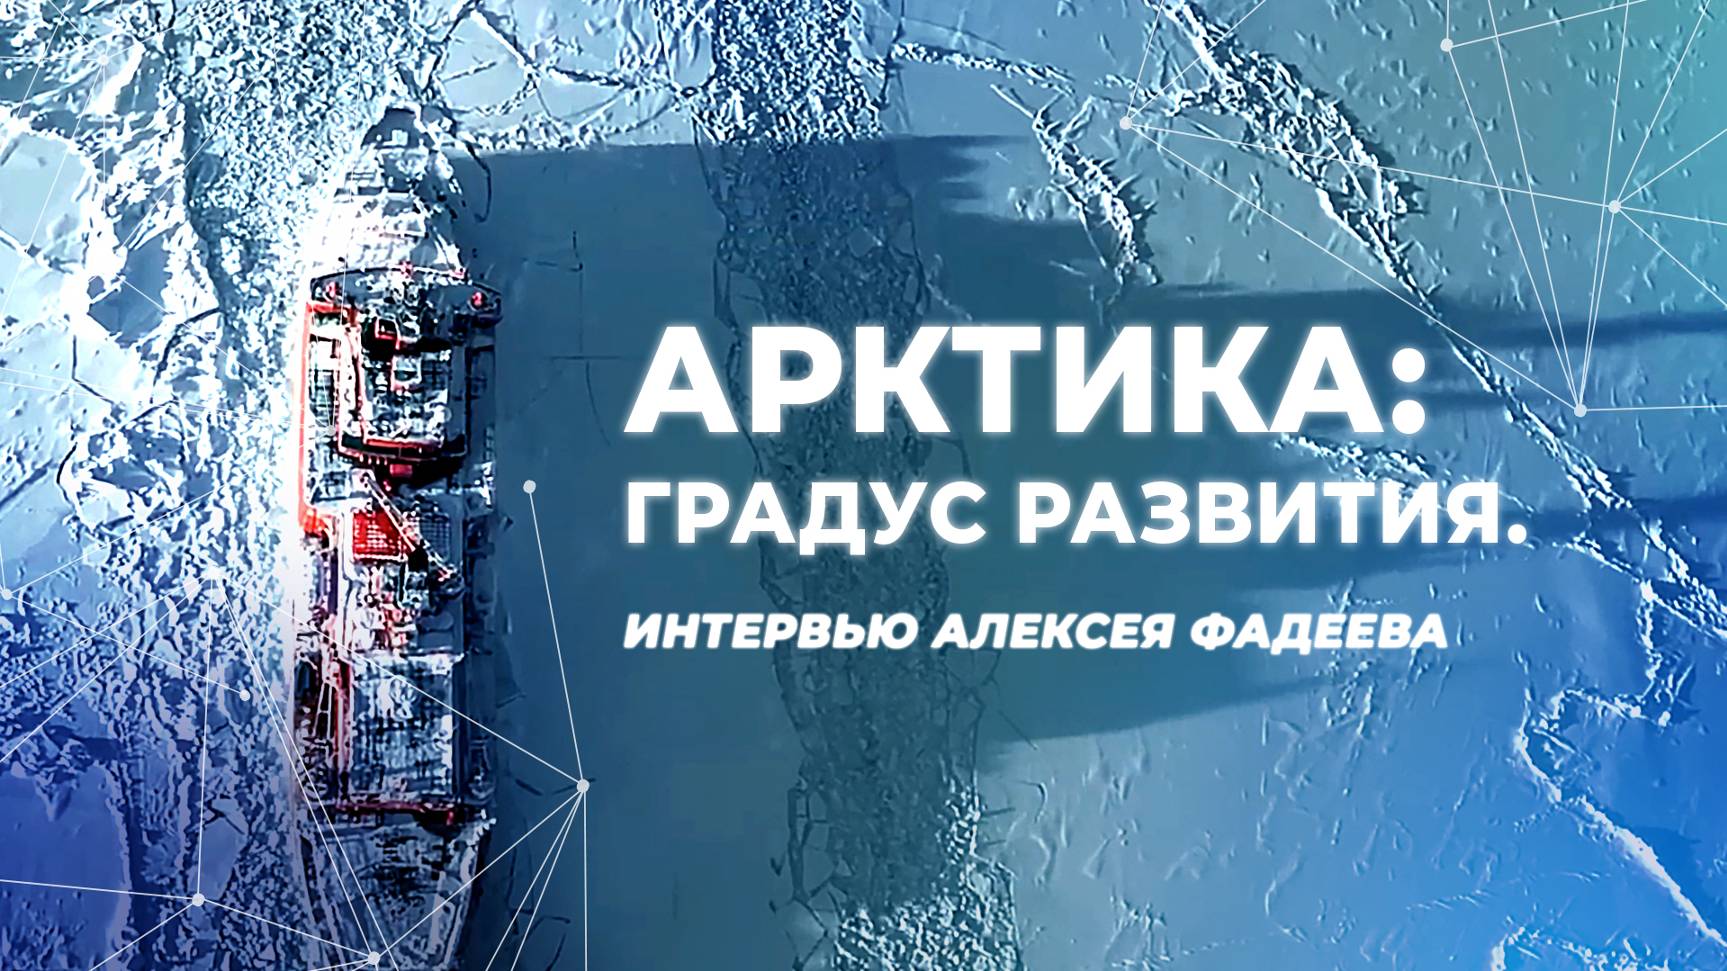 Арктика: градус развития. Интервью Алексея Фадеева